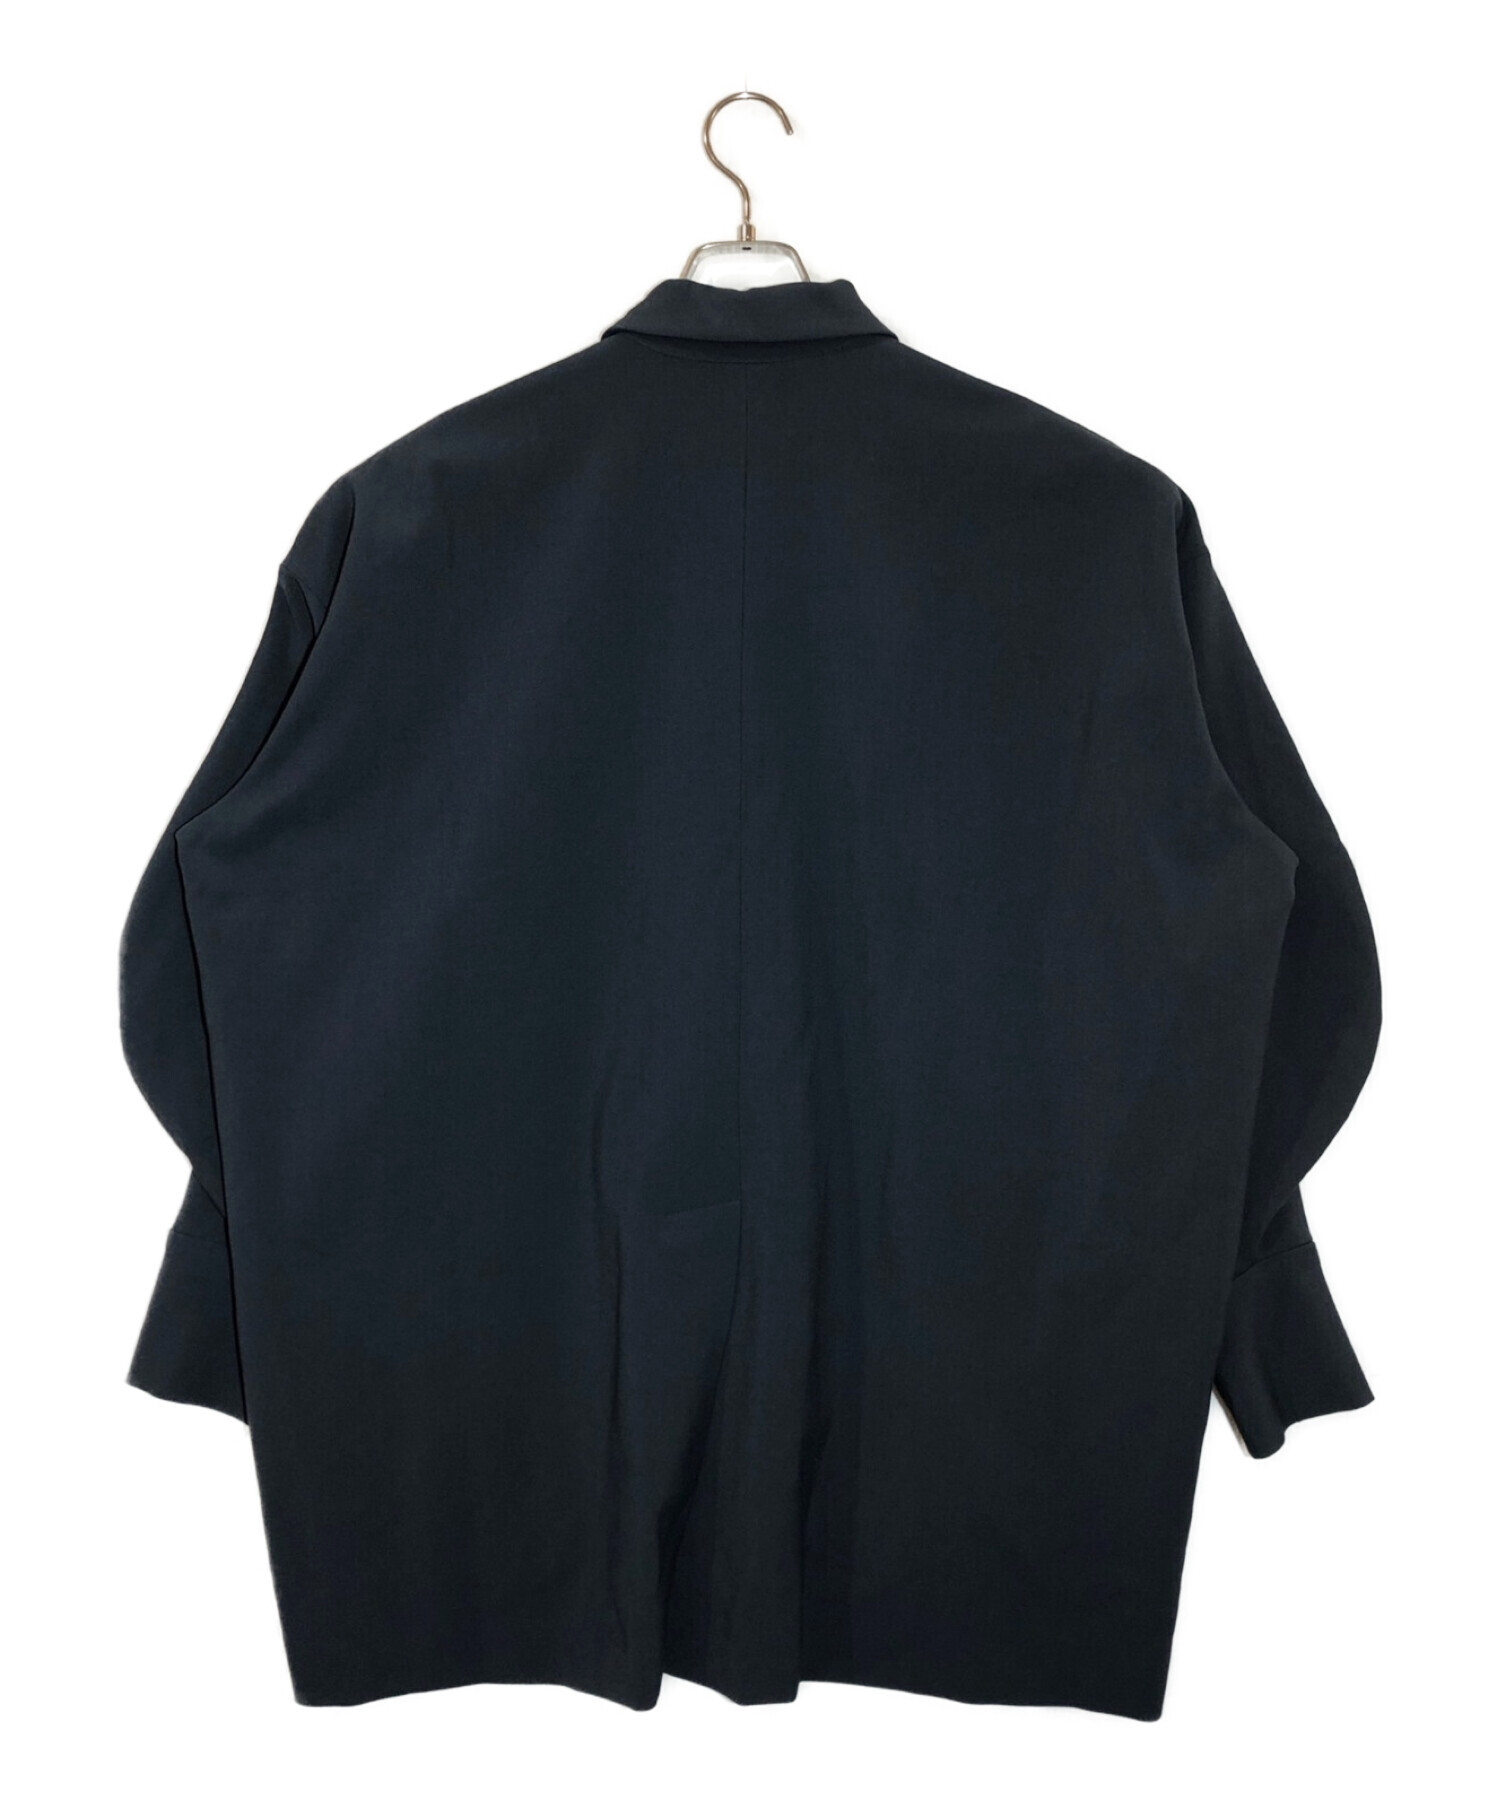 ENFOLD (エンフォルド) ダブルクロスカーブアームポロシャツ グレー サイズ:38 未使用品